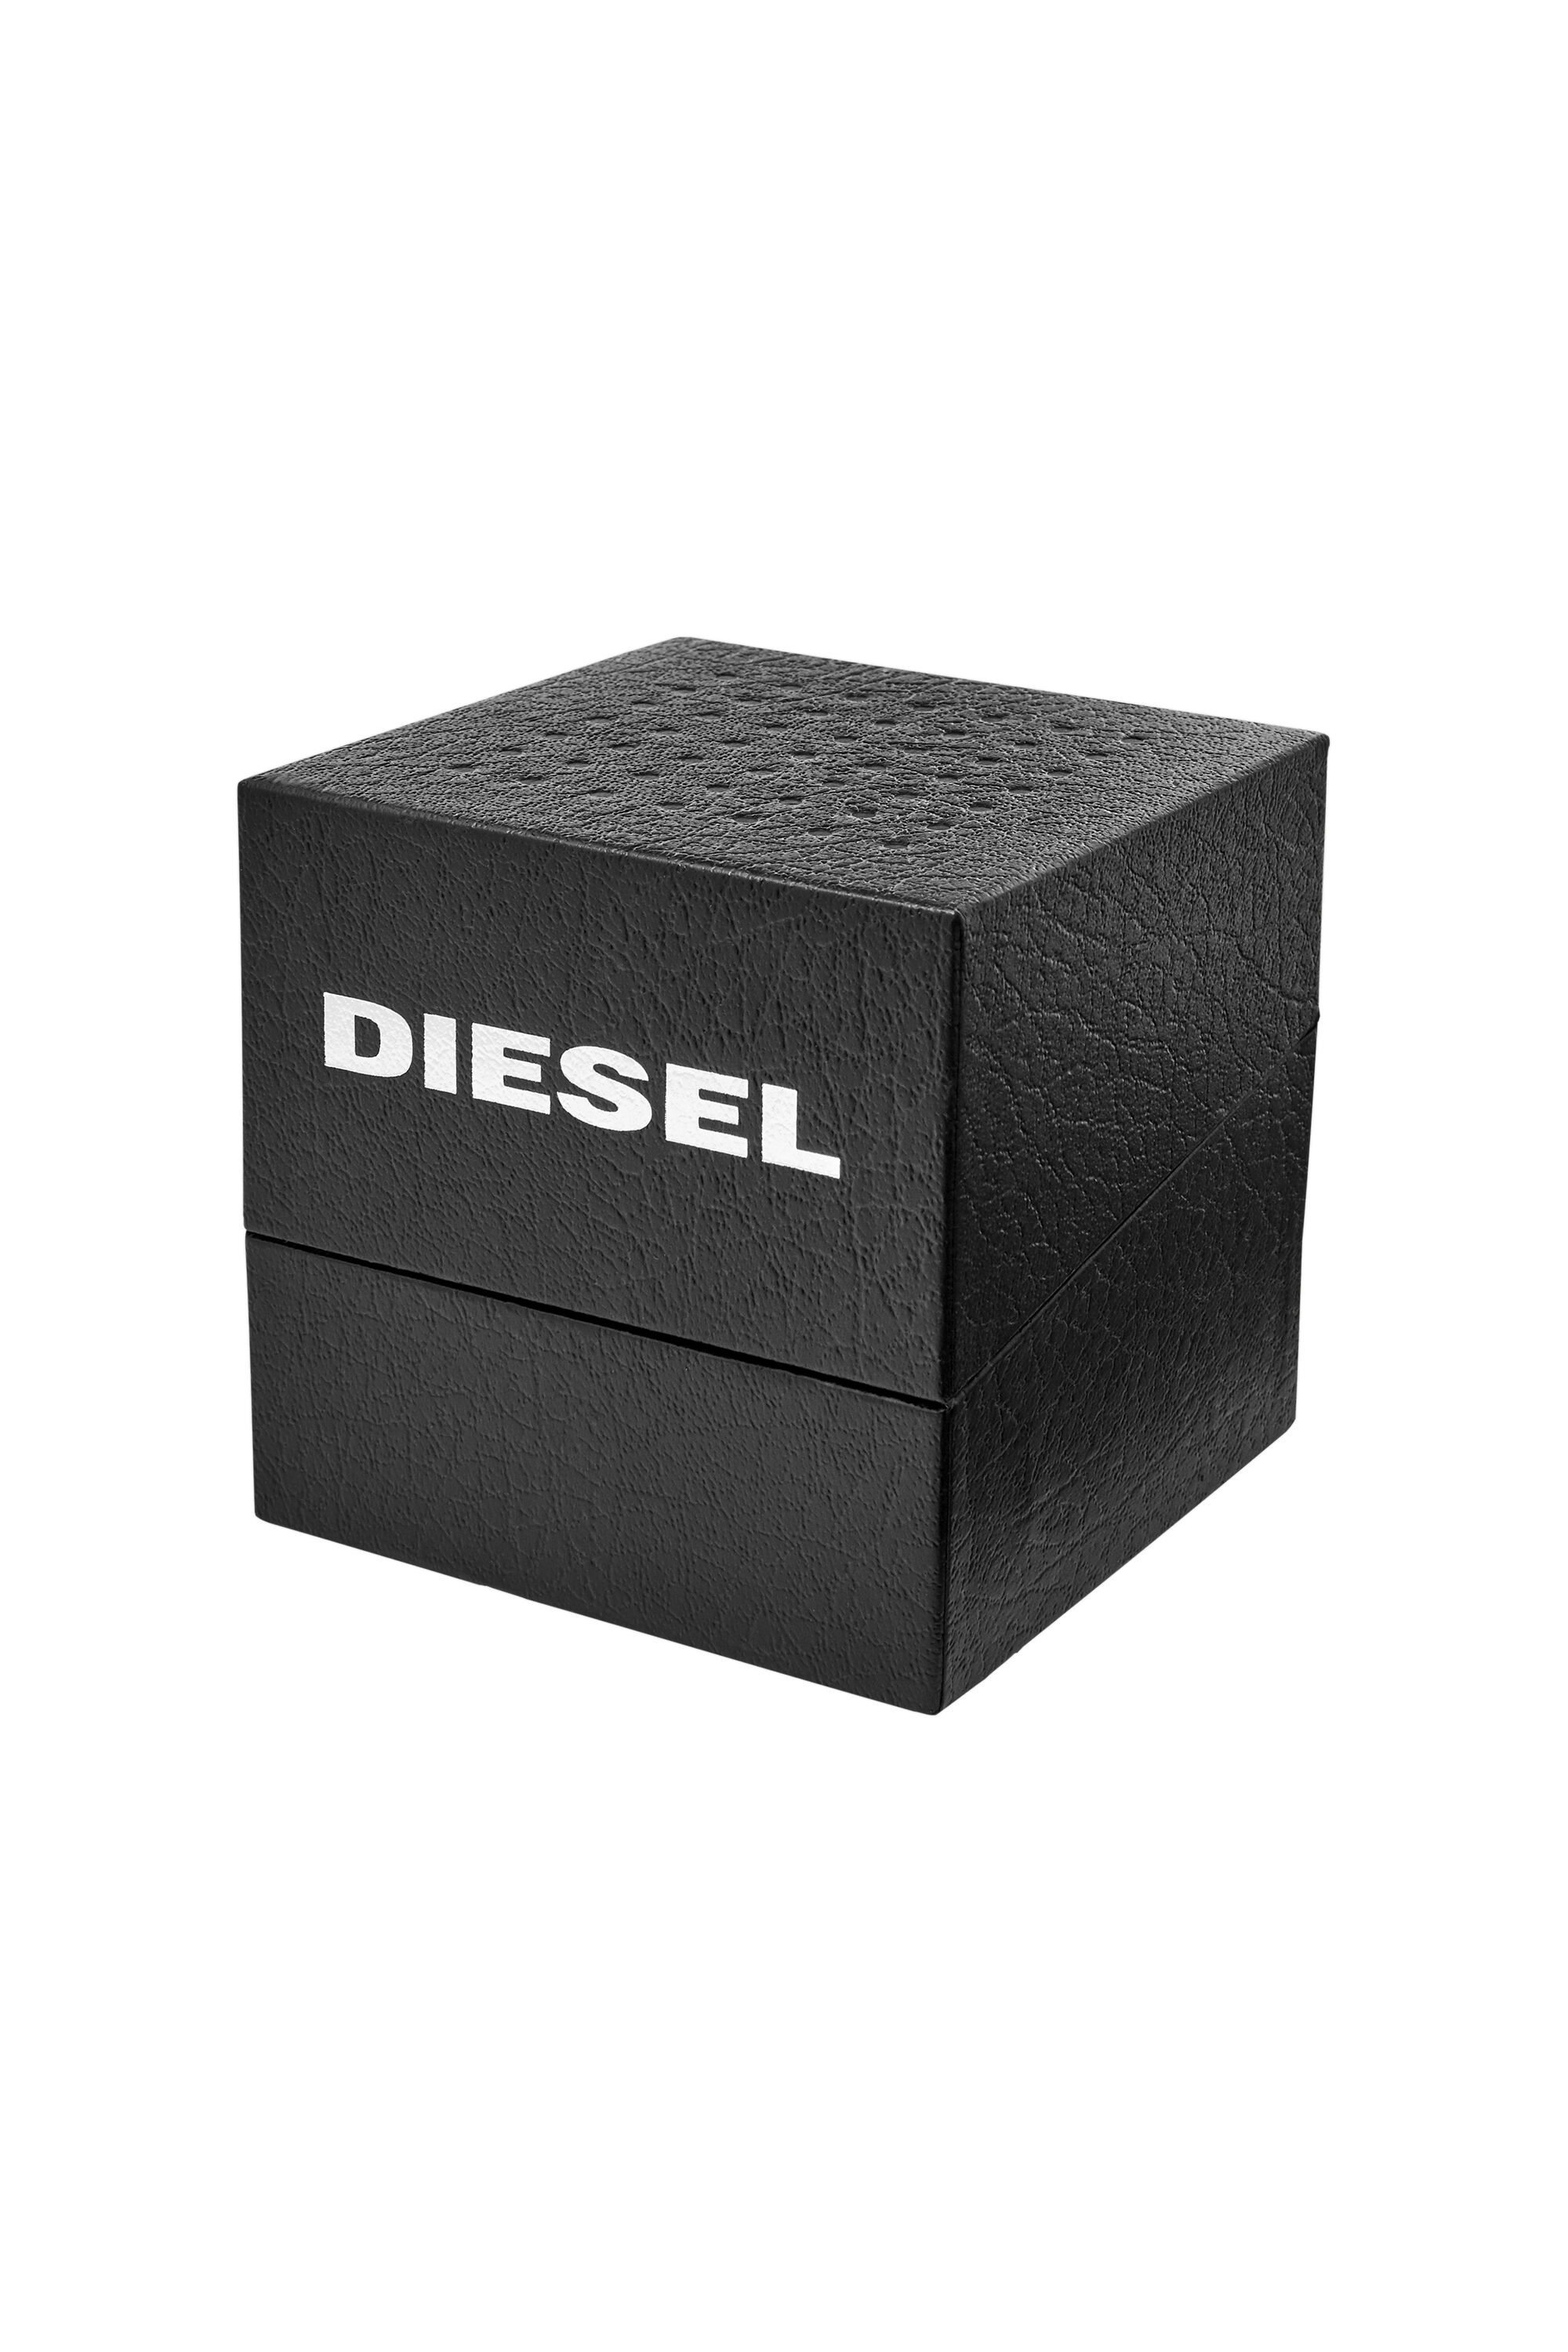 Diesel - DZ1907, Negro - Image 5